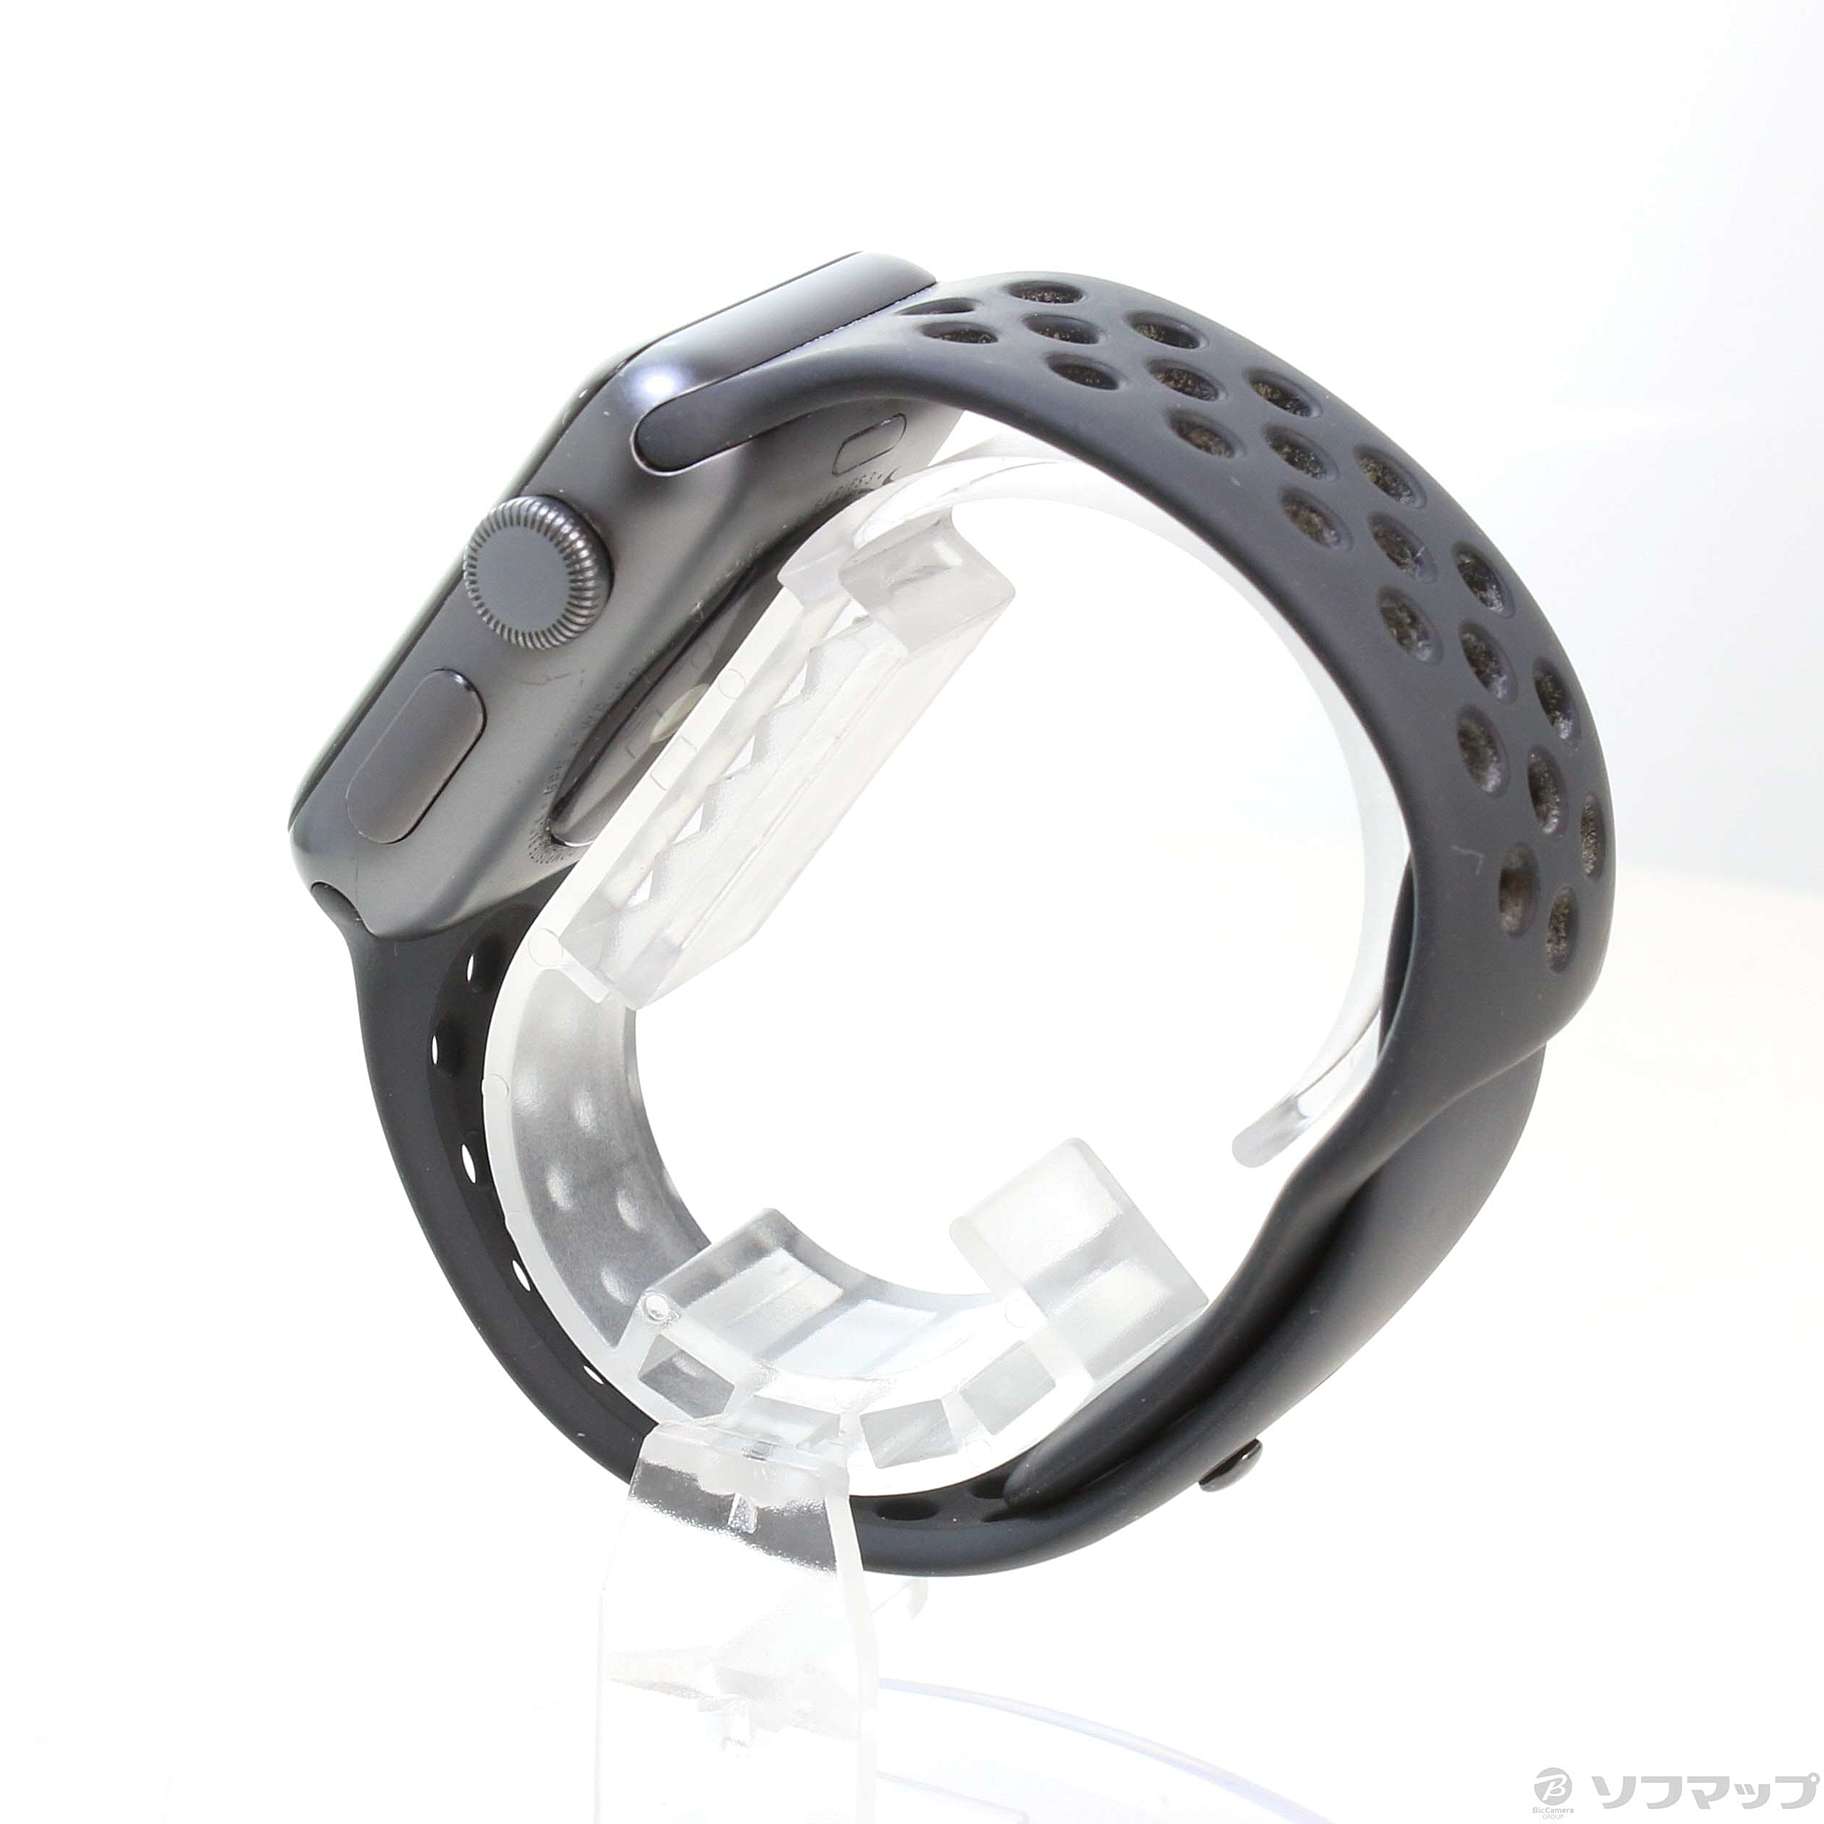 中古品〕 Apple Watch Series 3 Nike+ GPS 38mm スペースグレイ ...